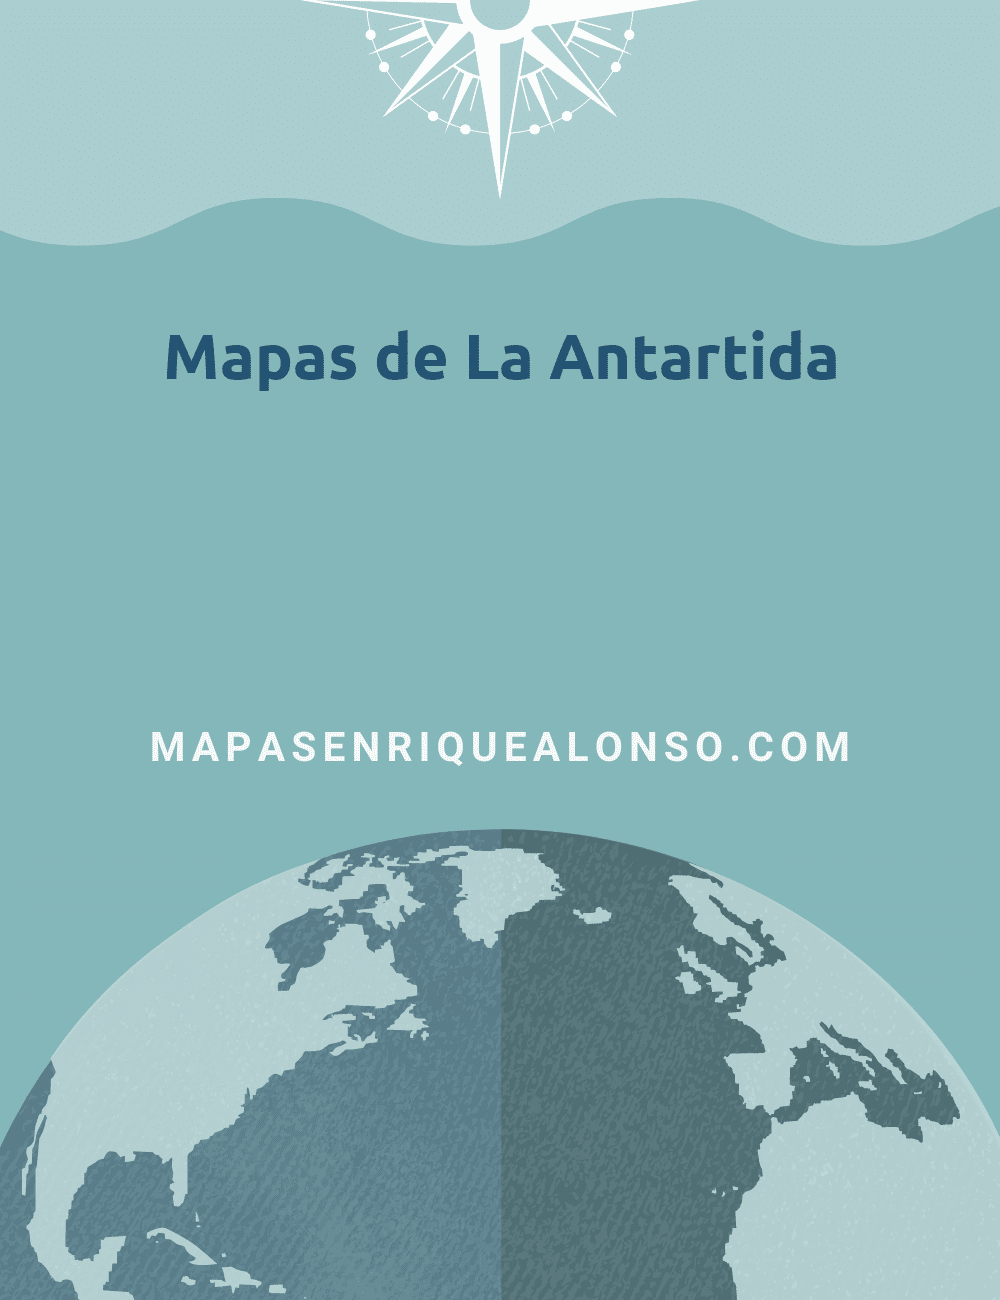 Mapas de La Antartida